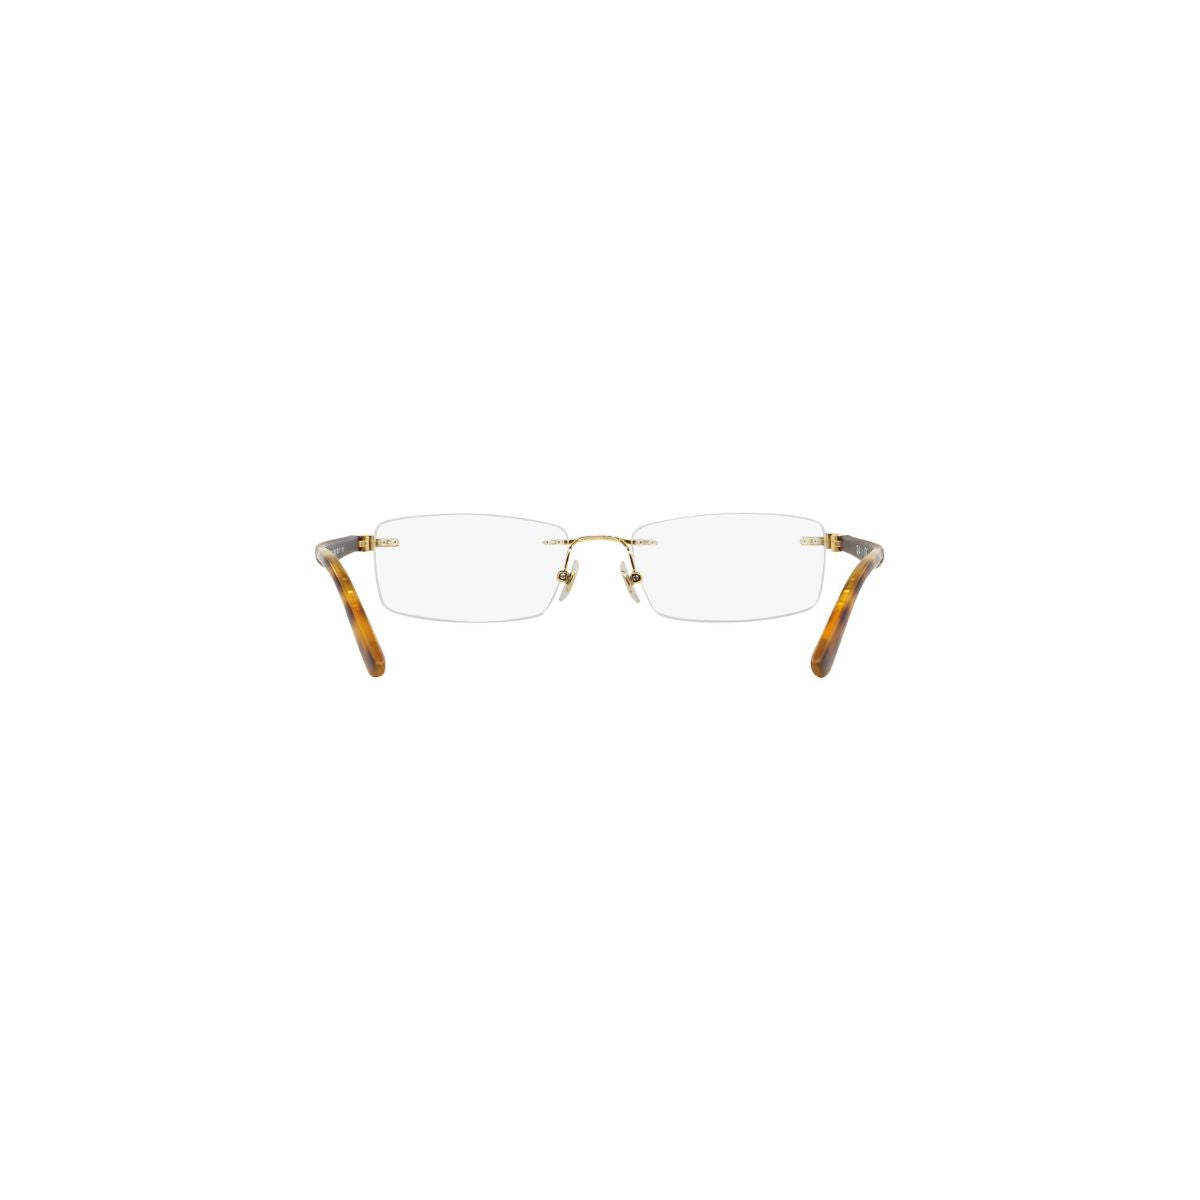 "buy Rayban 6326I 2500 optical eyewera glasses frame for men and women at optorium"